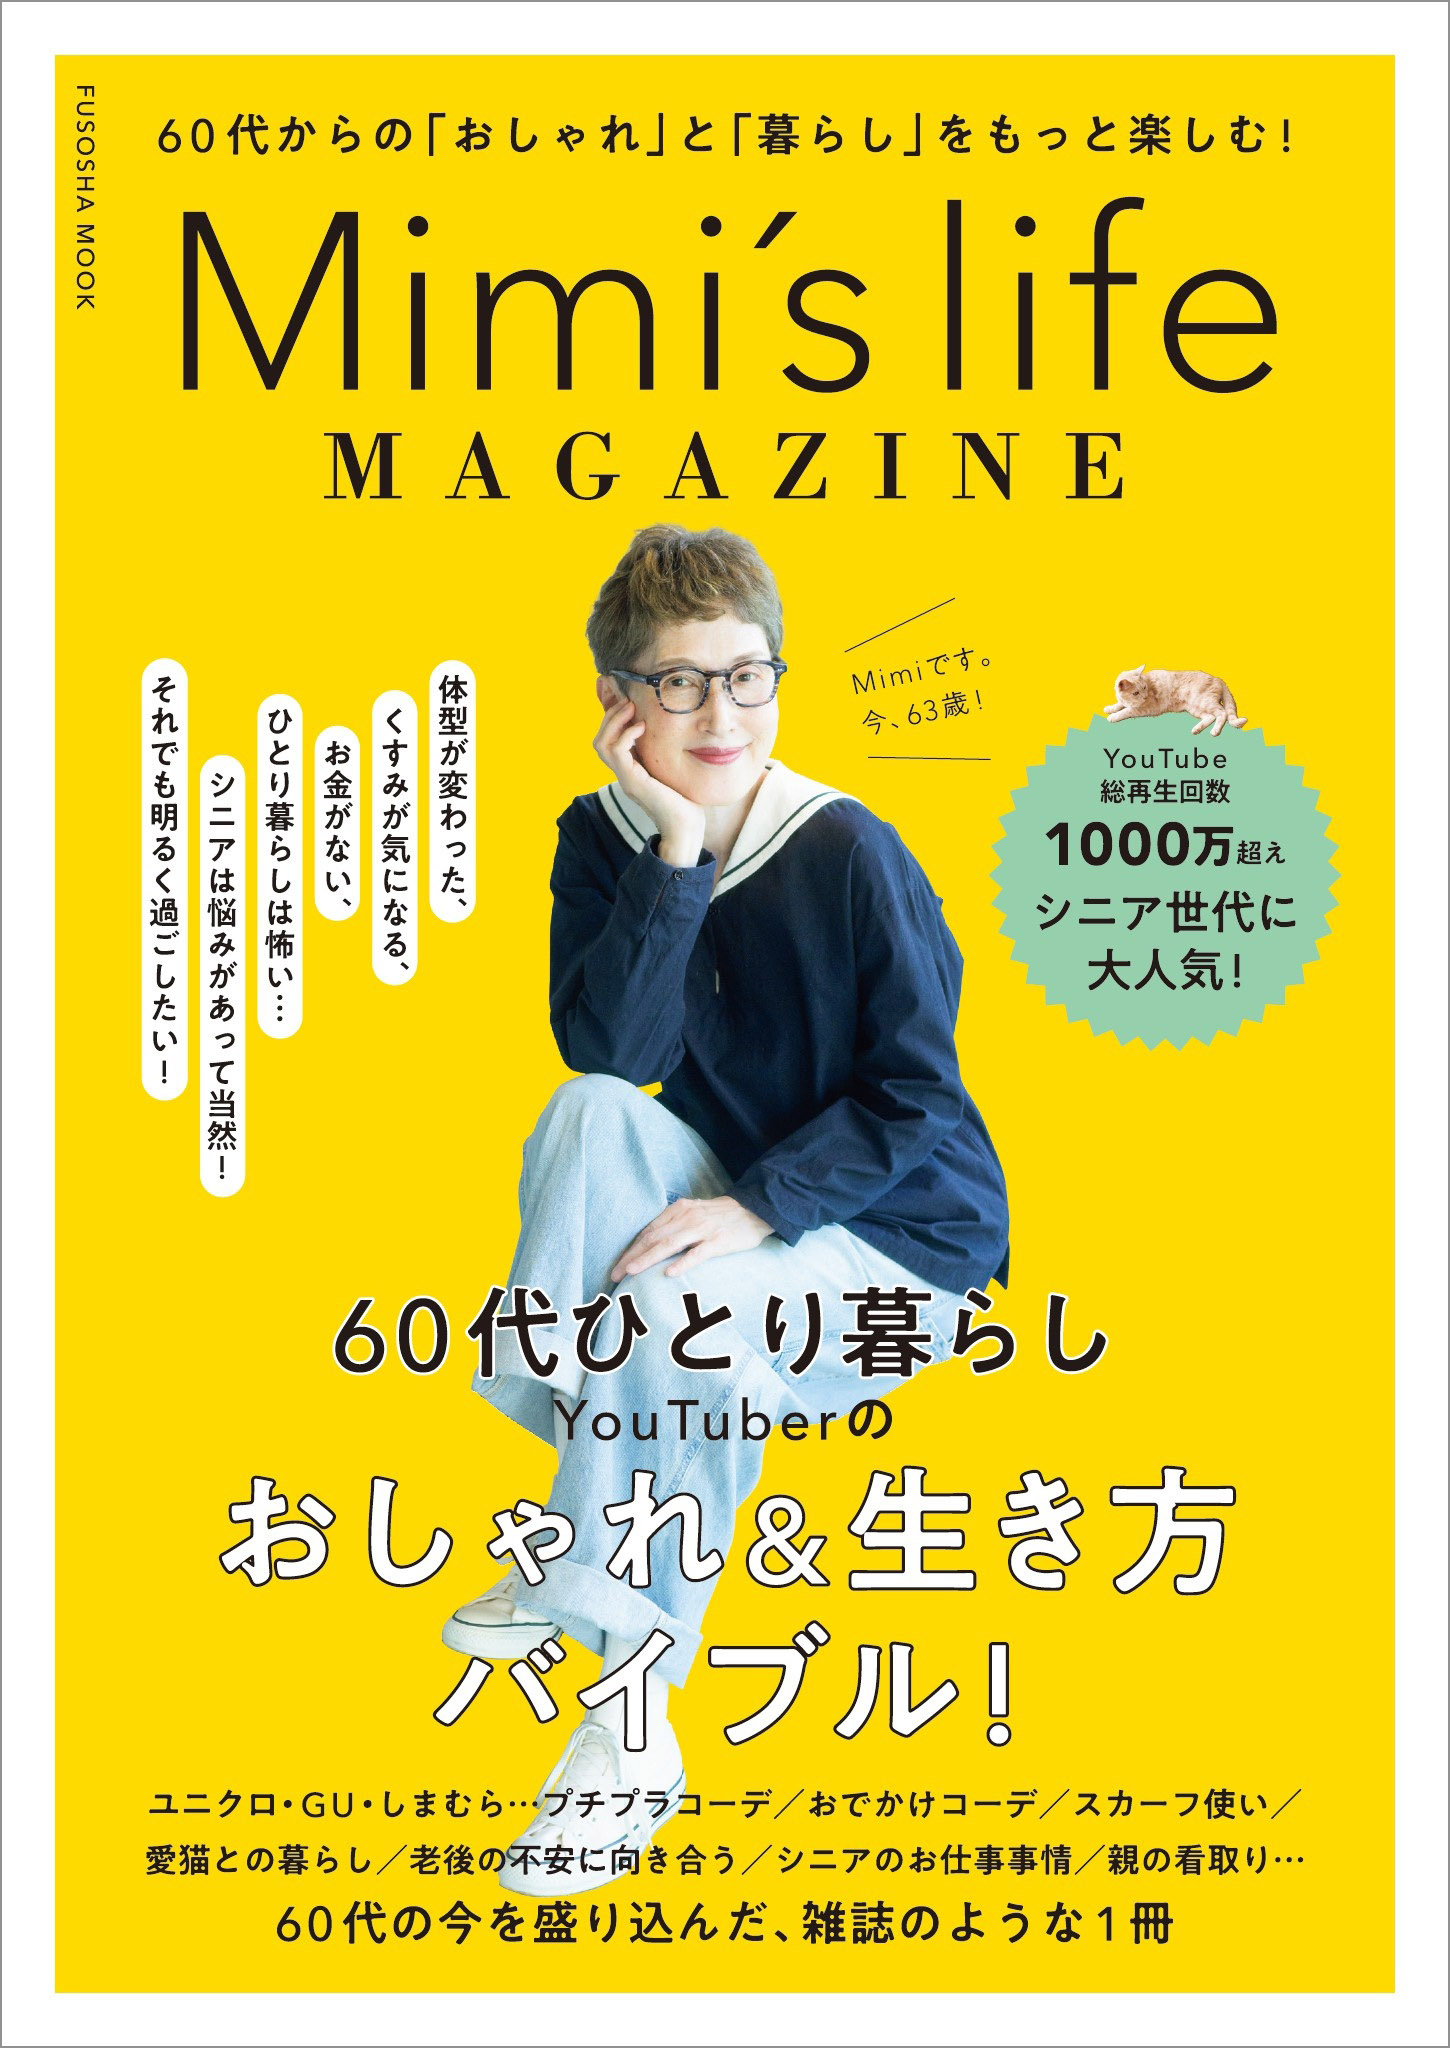 506円 Mimi's life MAGAZINE(書籍) - 電子書籍 | U-NEXT 初回600円分無料